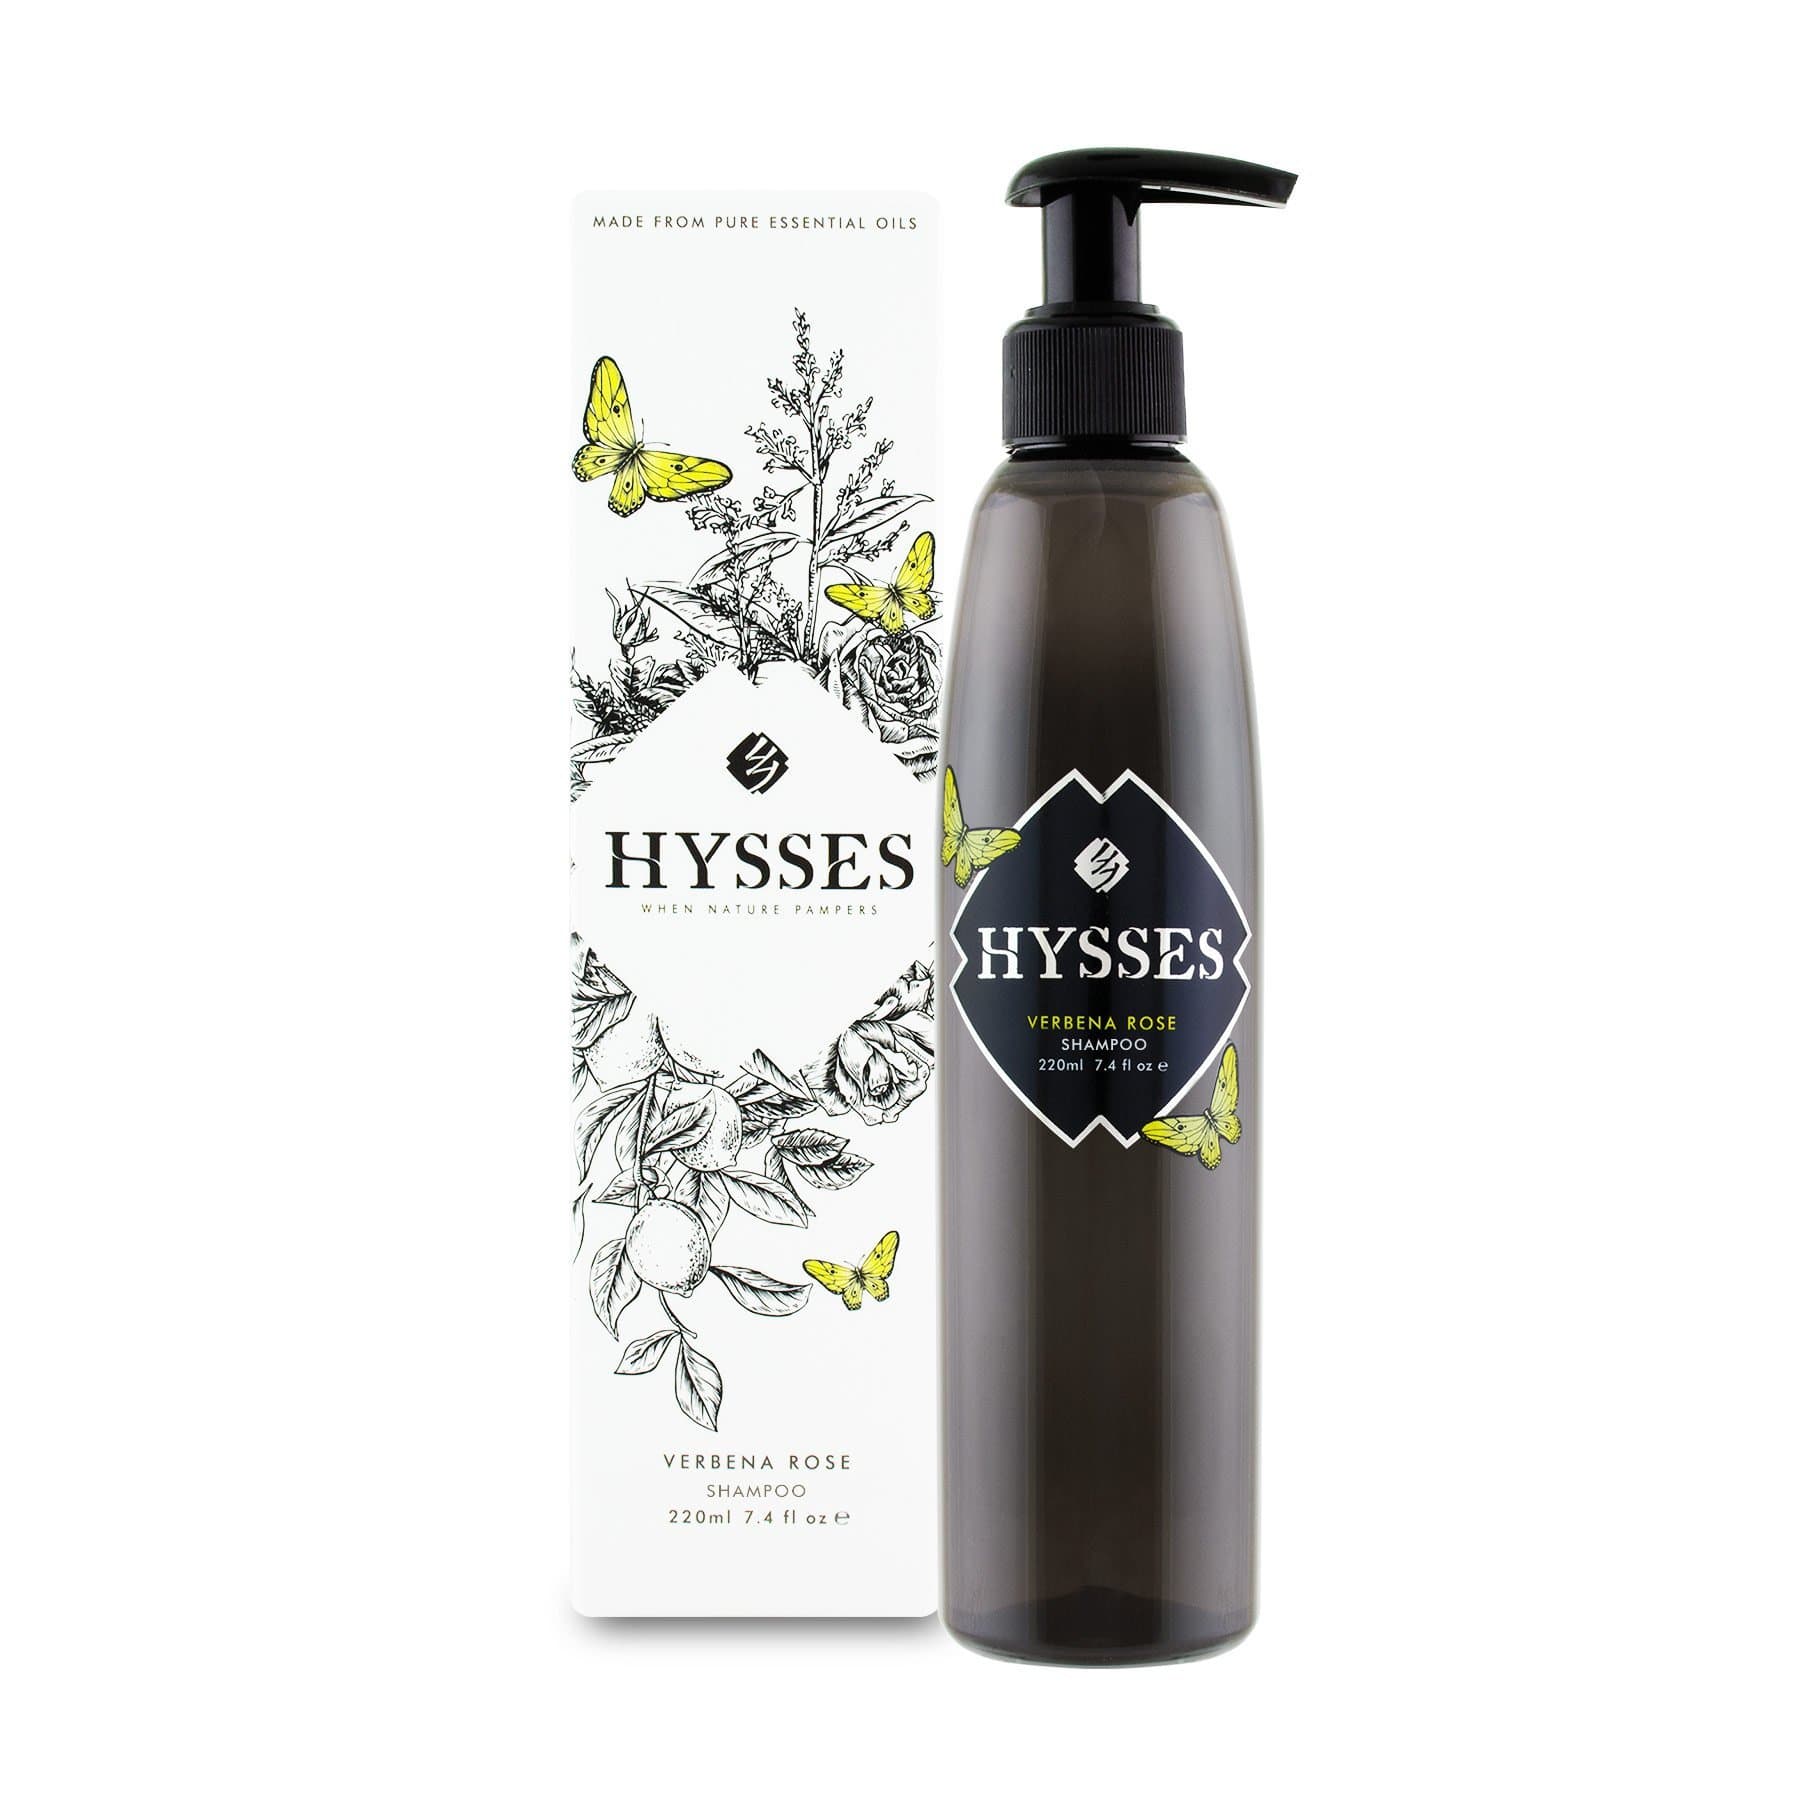 Hysses Hair Care Shampoo Verbena Rose, 220ml